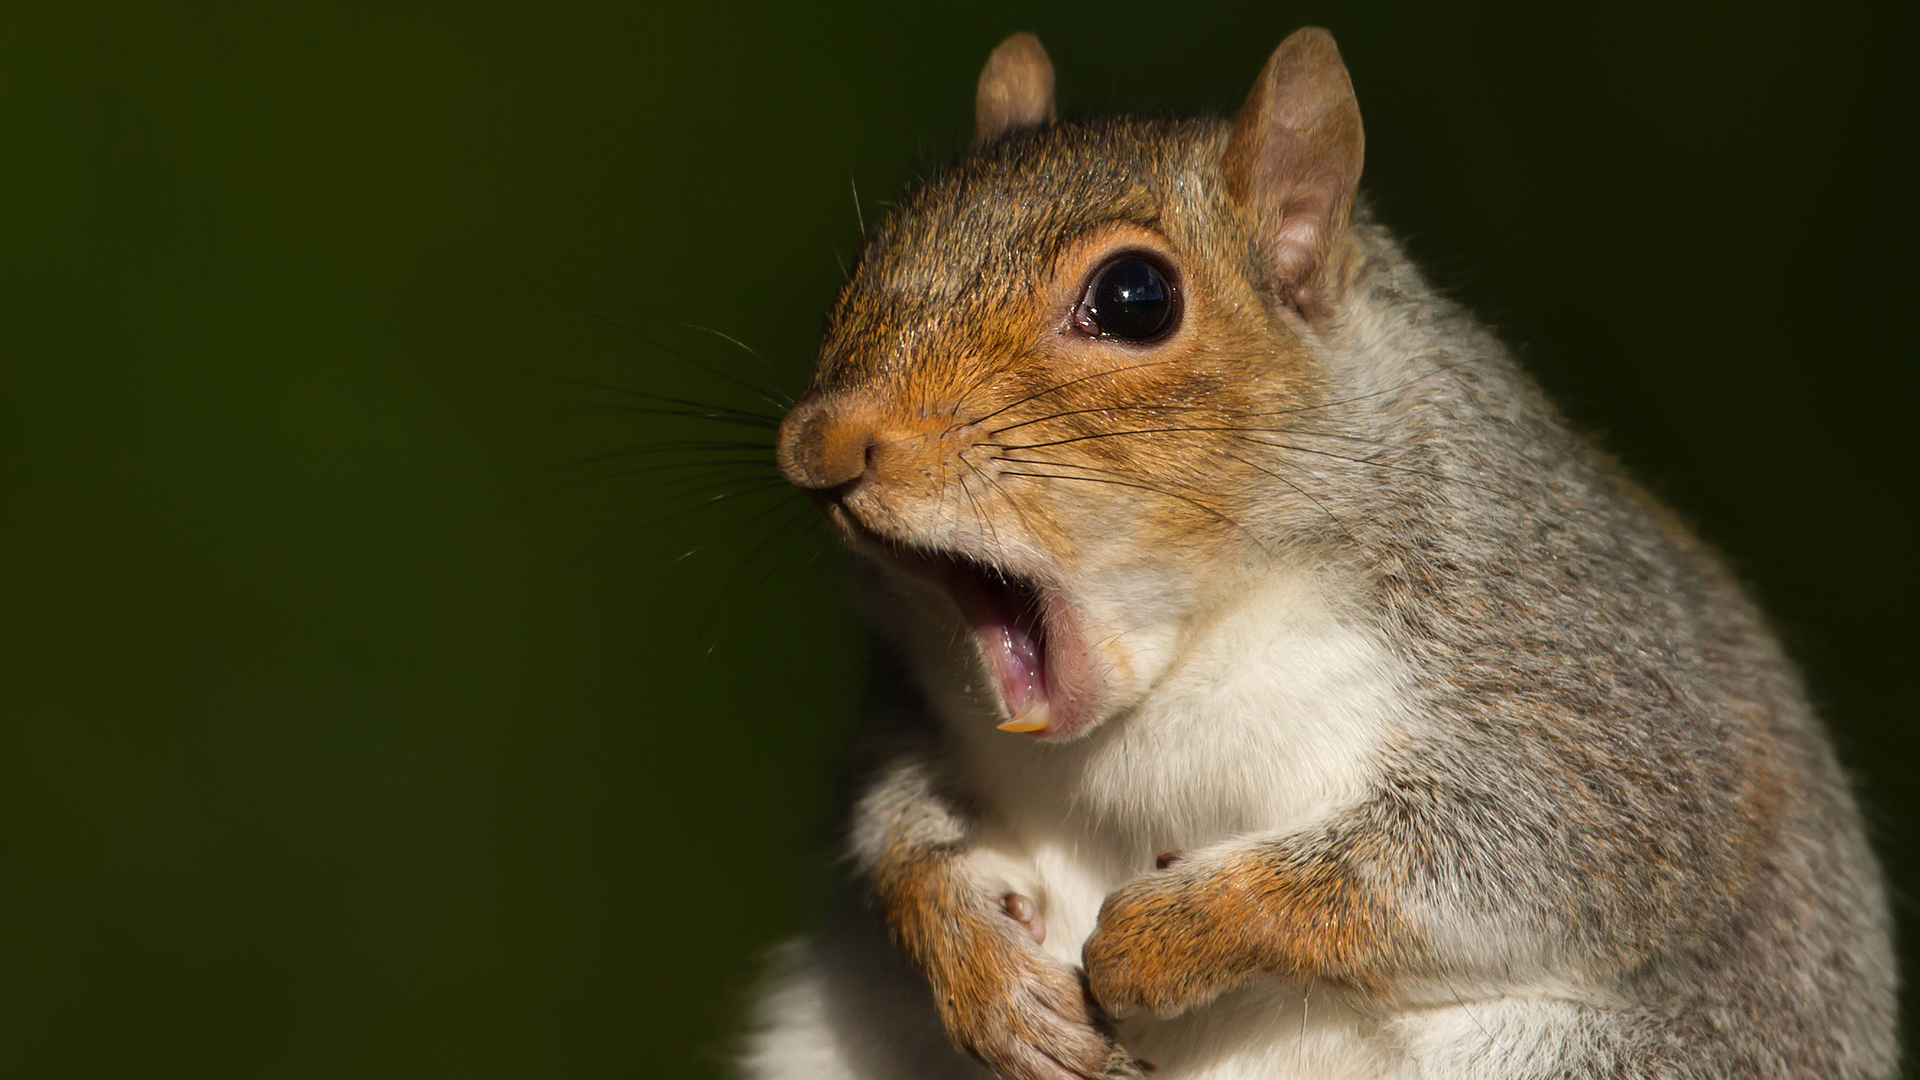 7 hetes mókuskölyök hangját rögzítette egy fotós